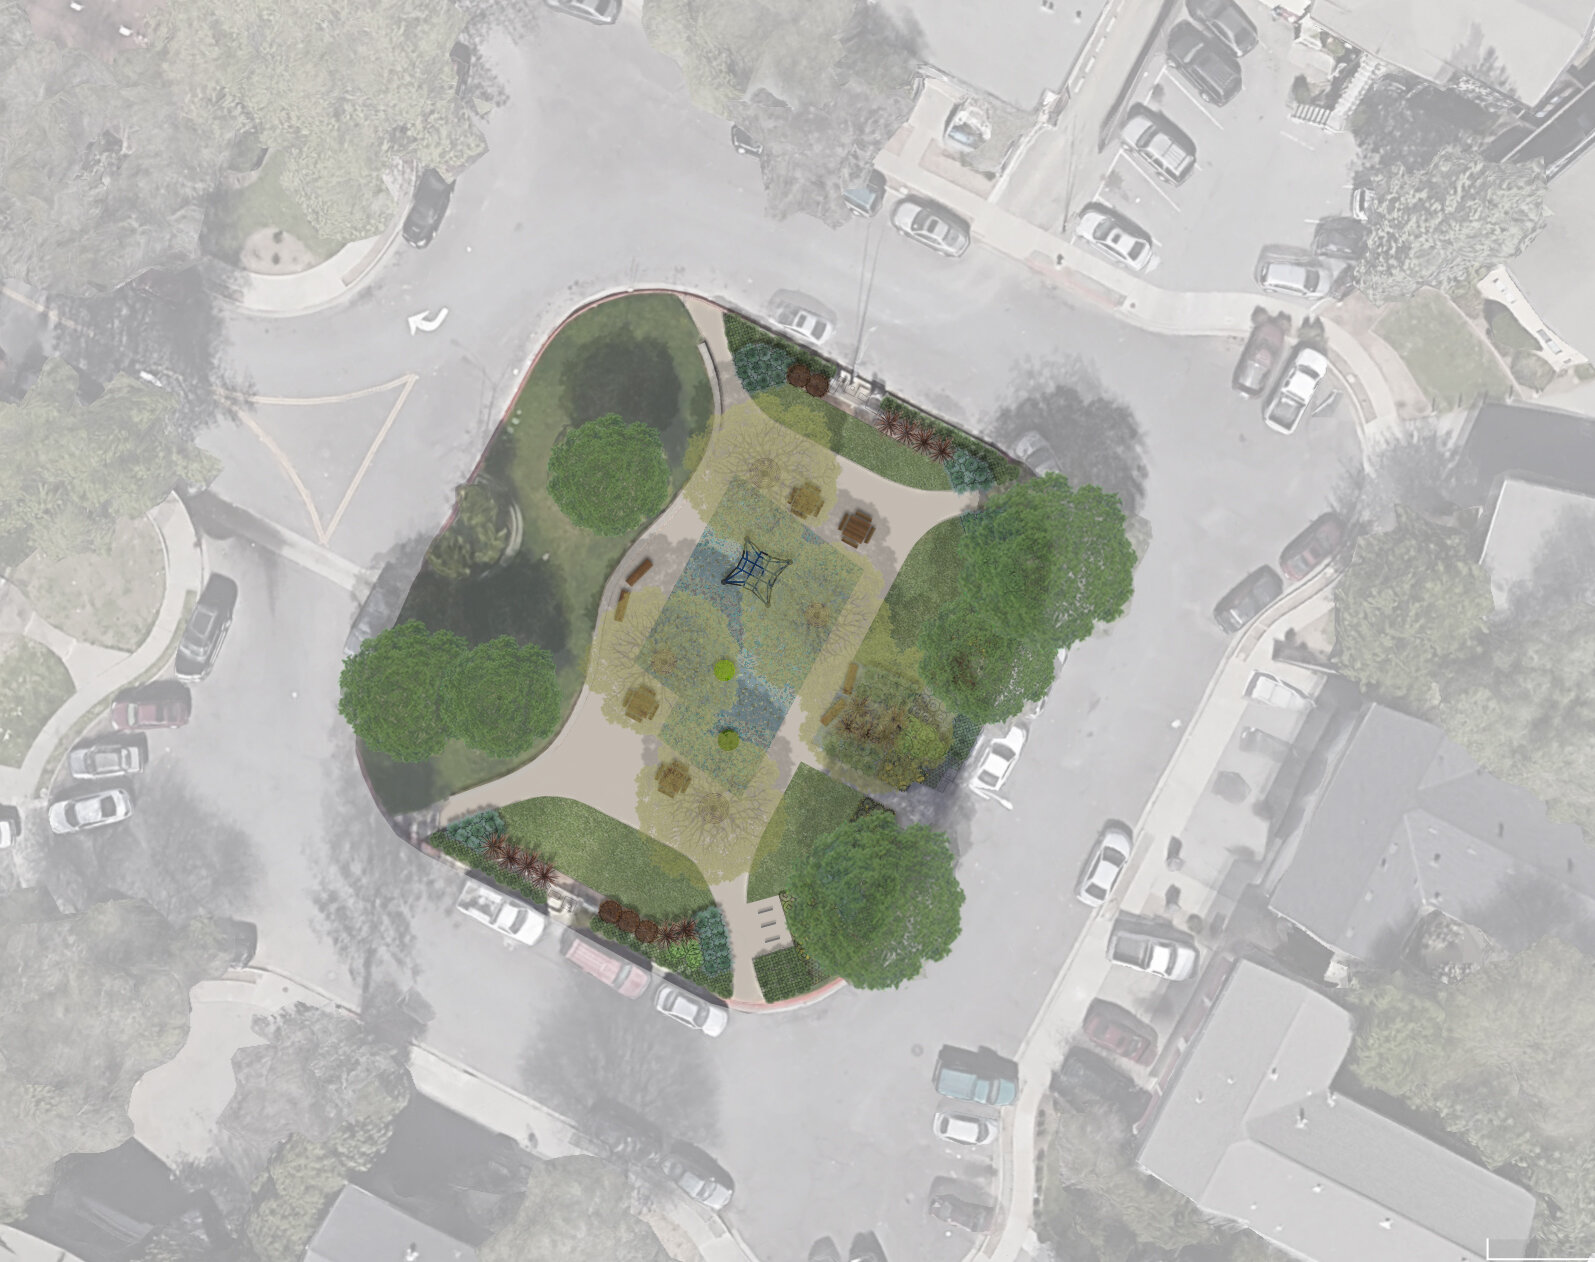 Camara Circle Park Illustrative Plan - 8.jpg